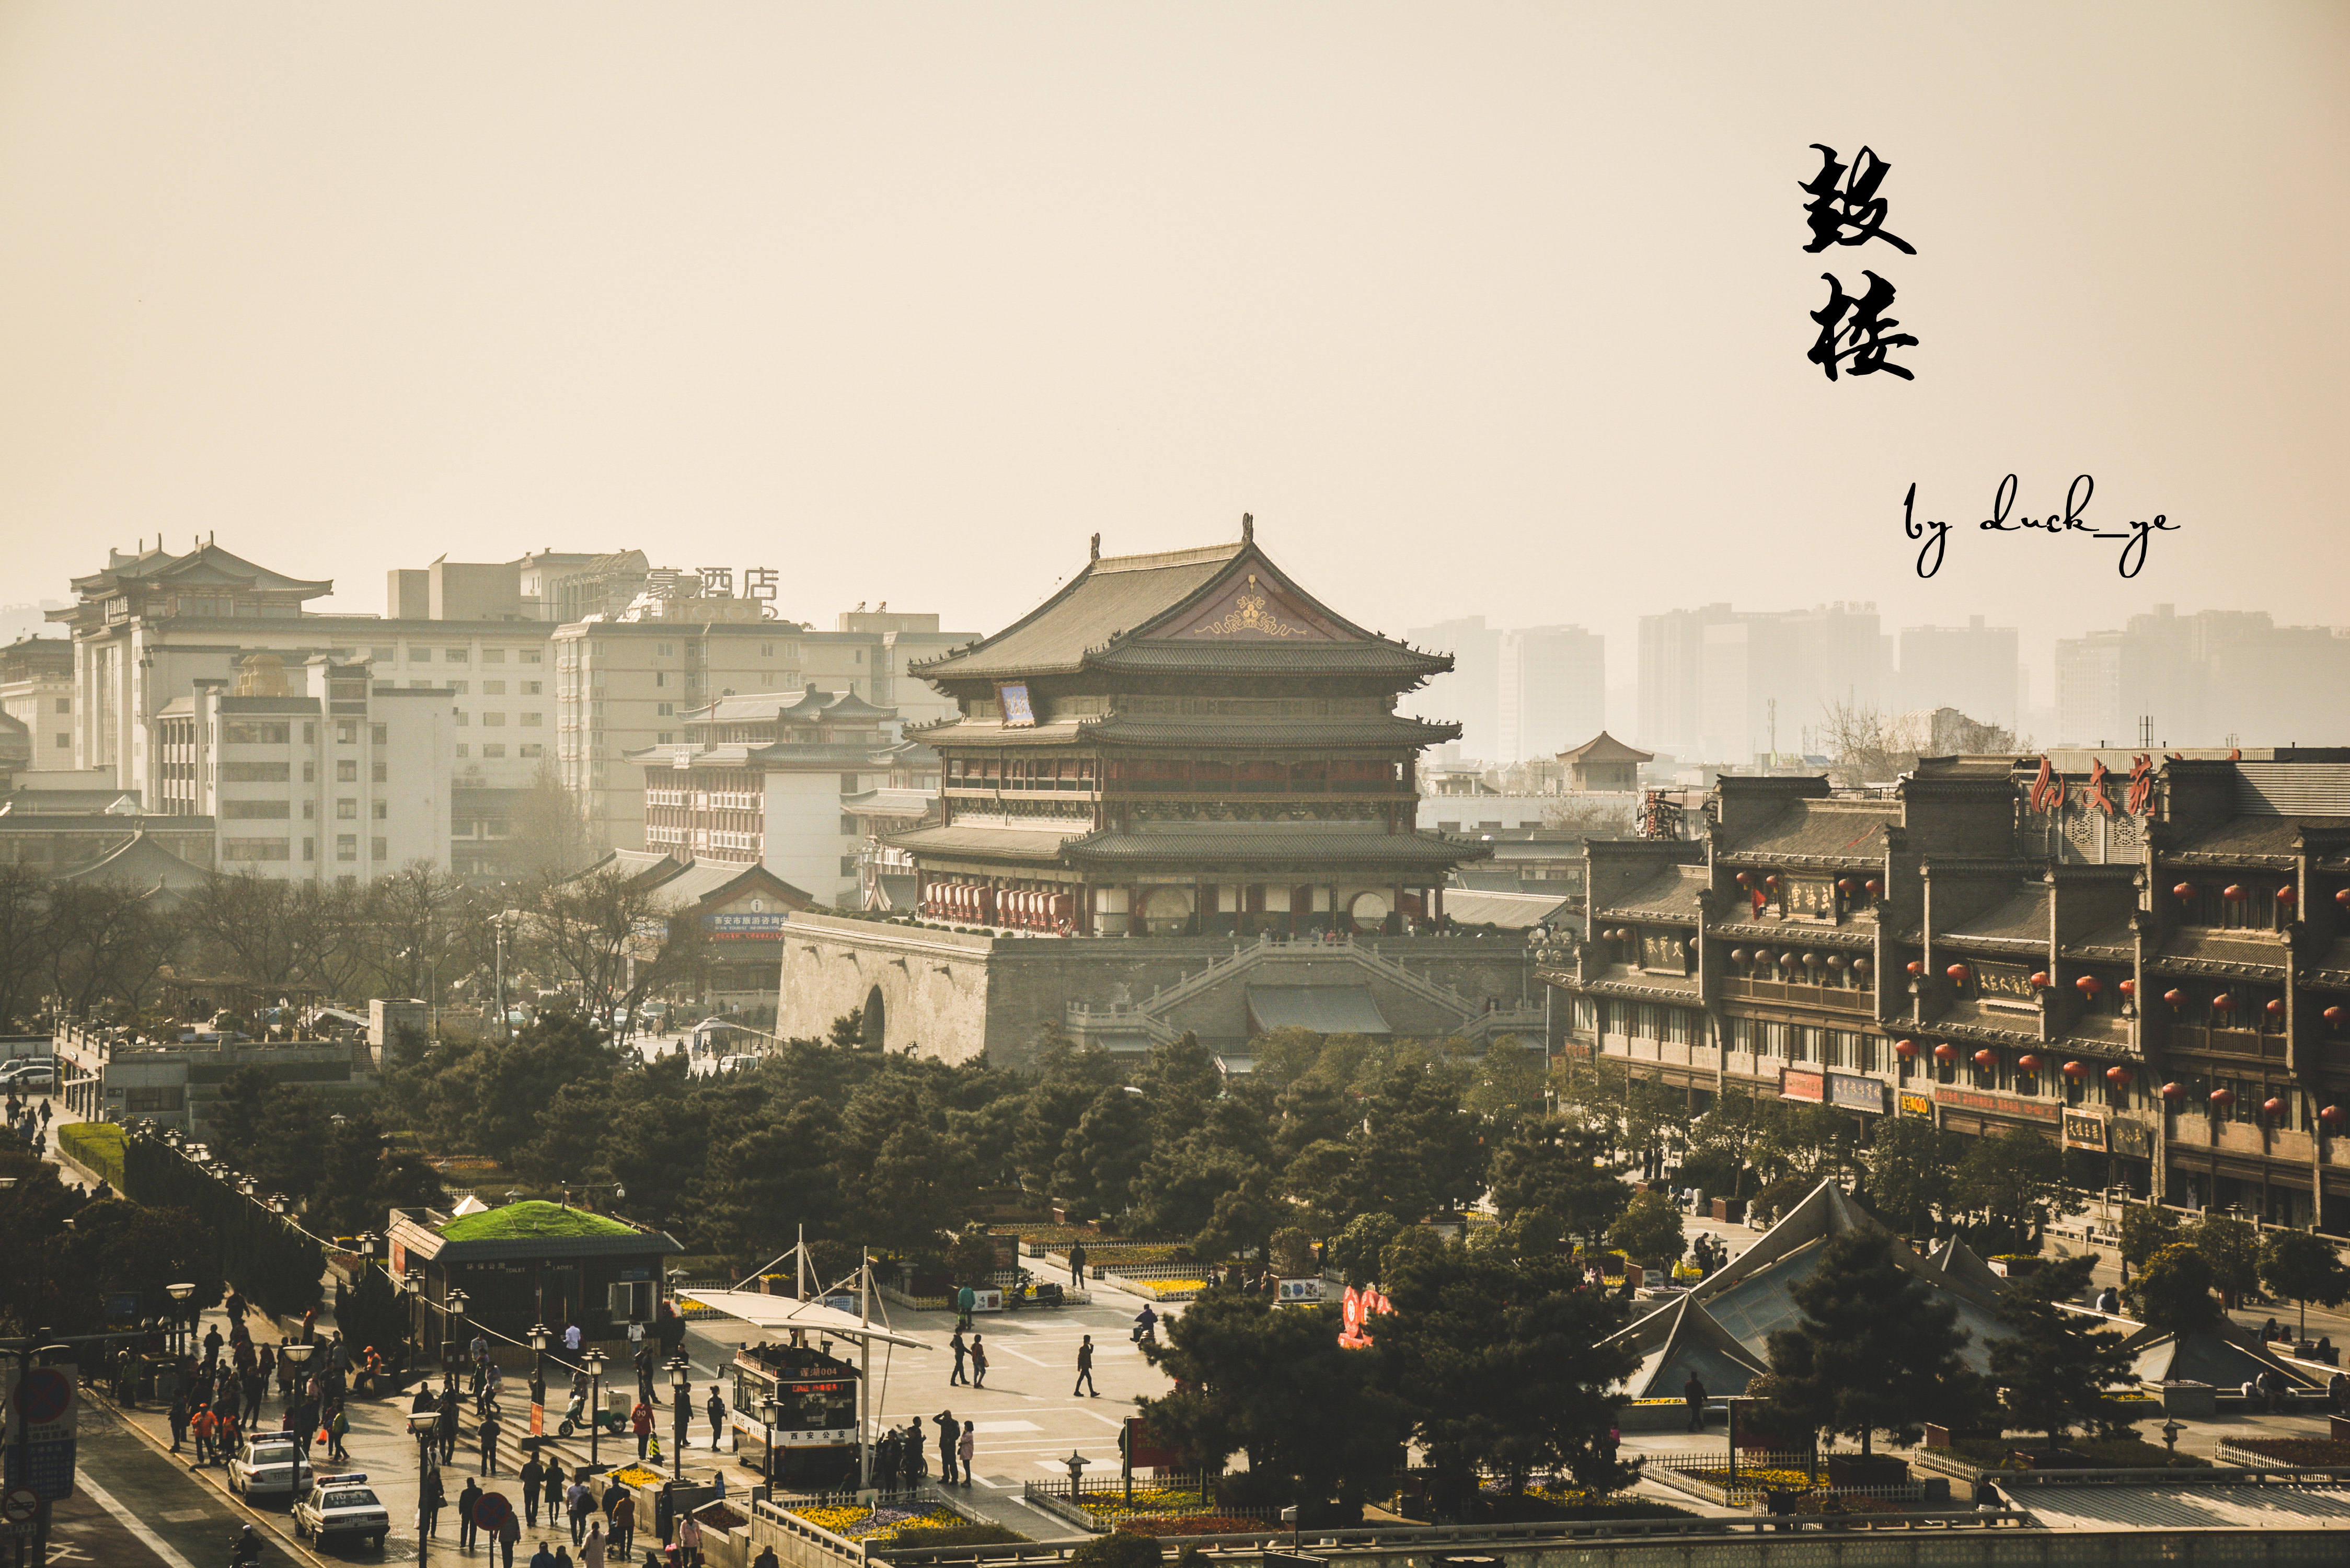 钟楼和鼓楼,可以称为长安的地标性建筑,西安的街道同北京一样,皇城的图片